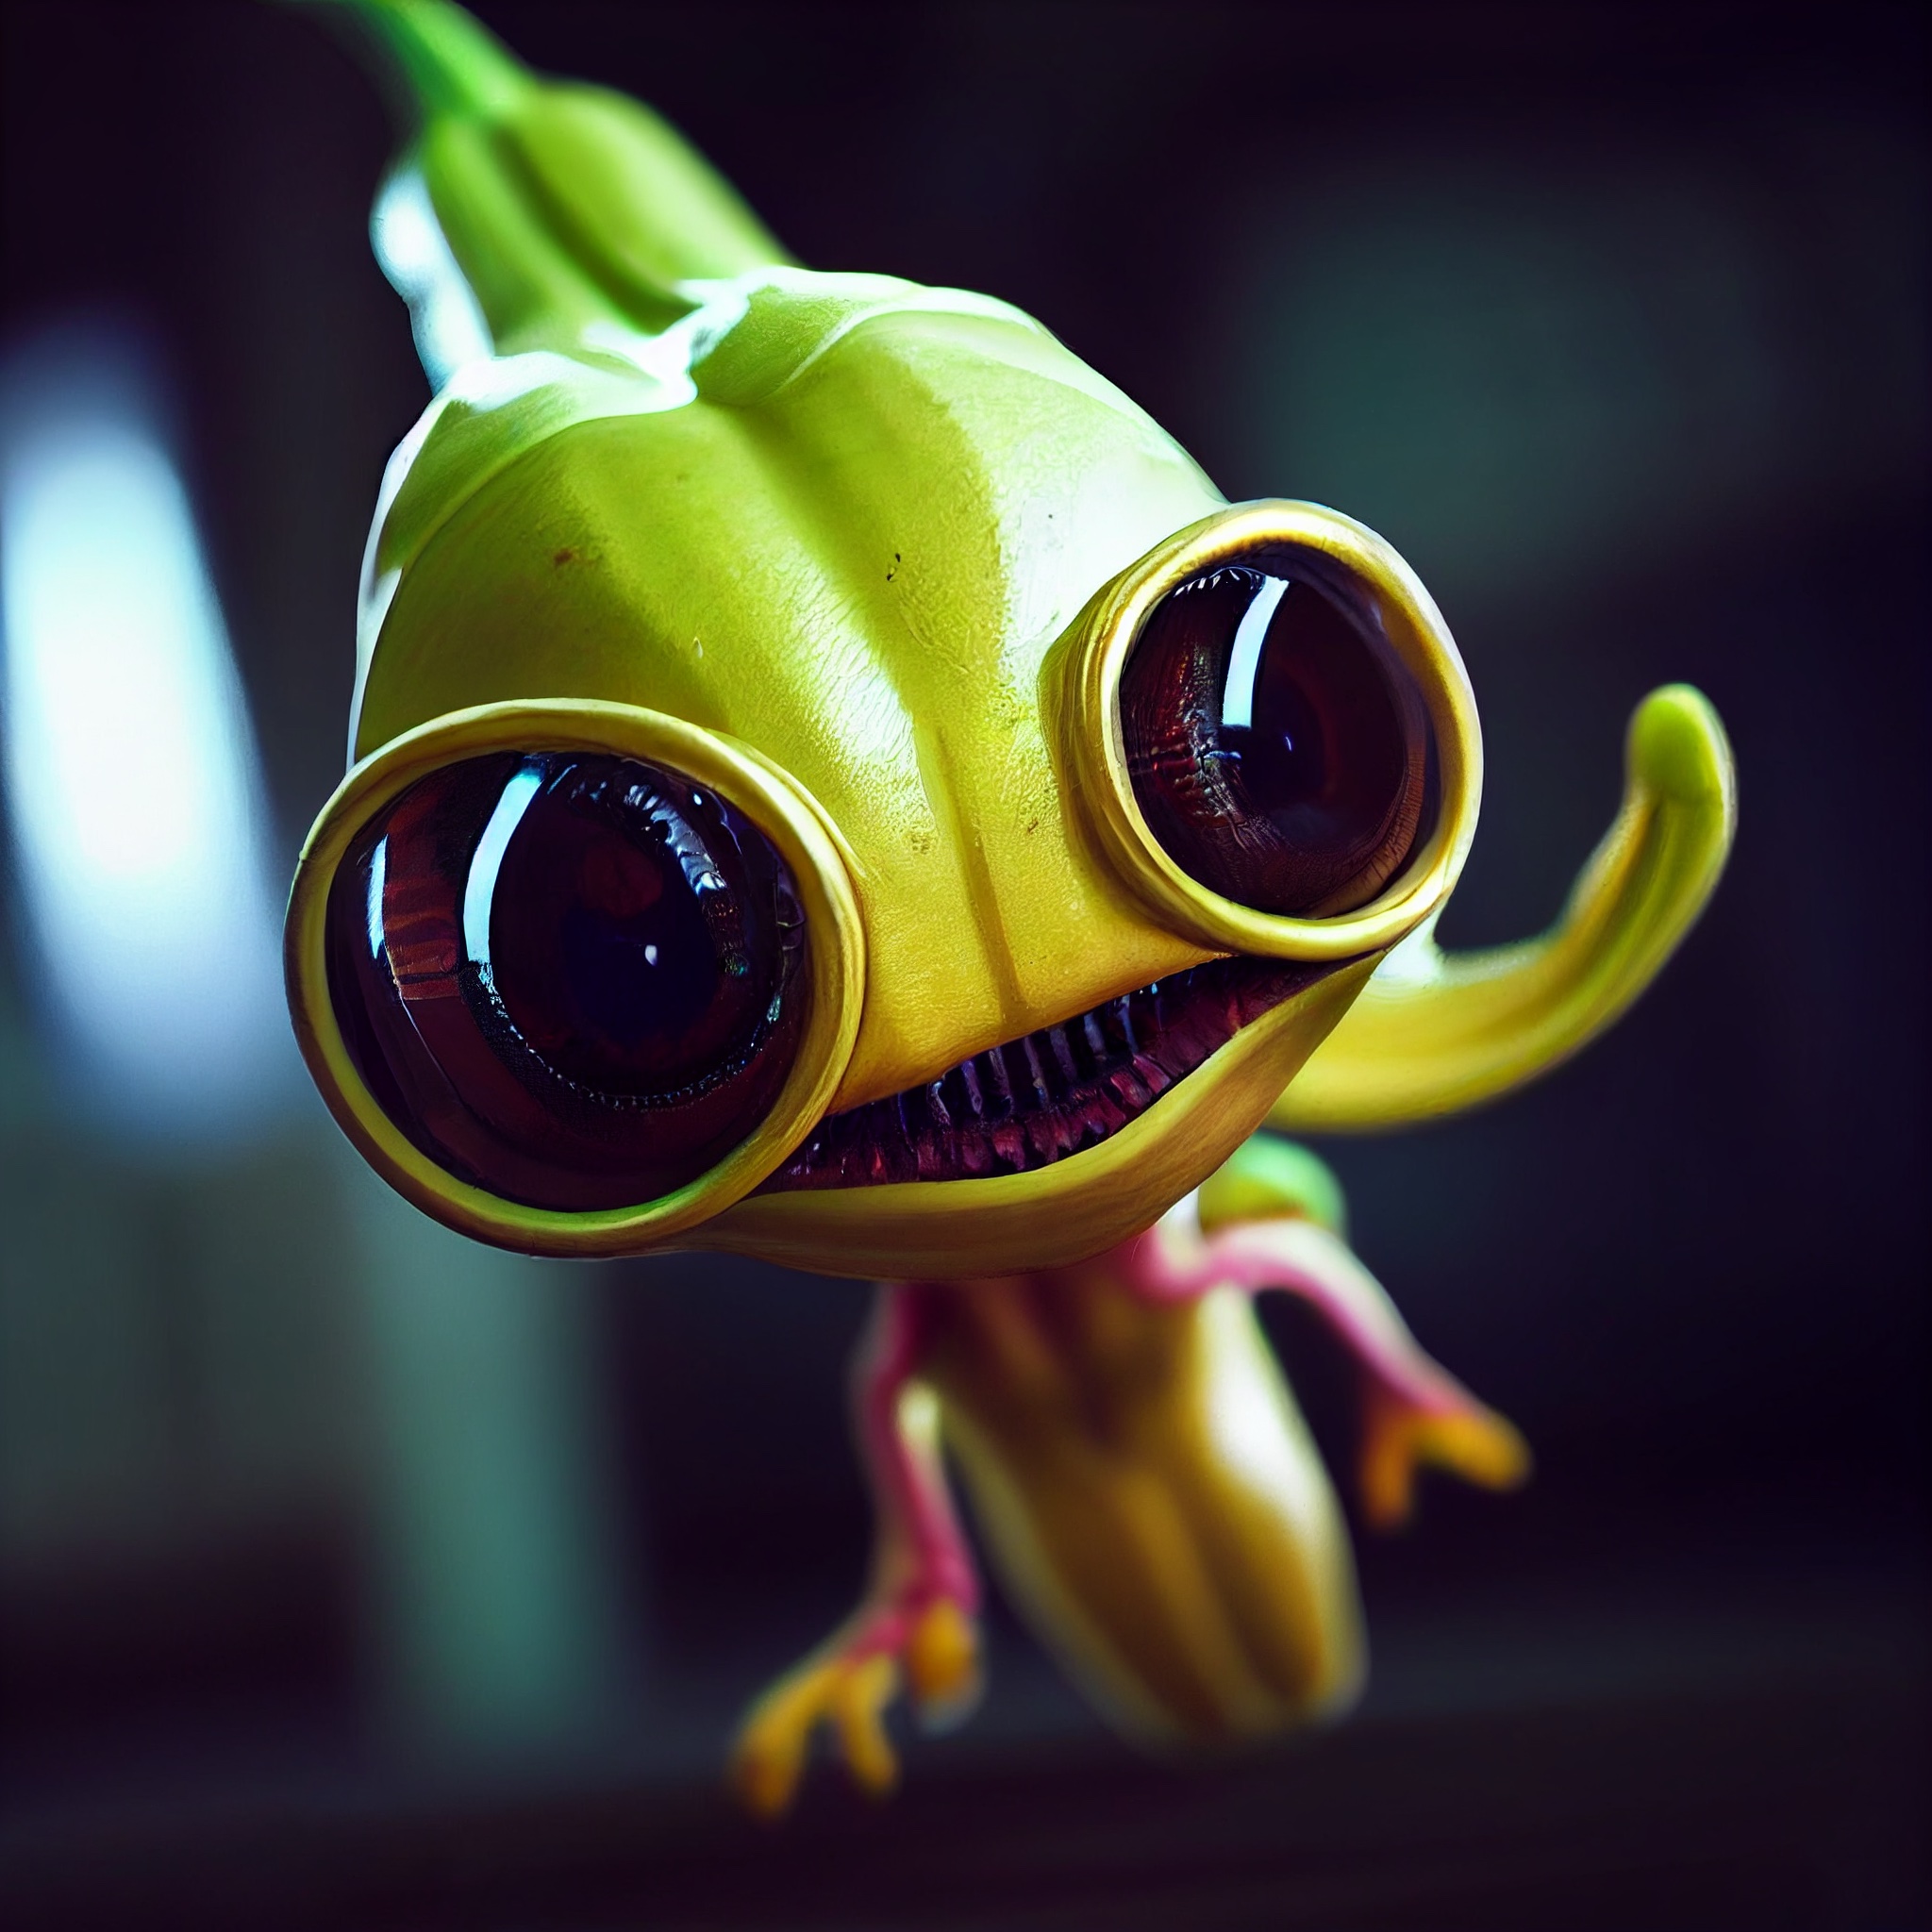 Banana alien fruit friend #2